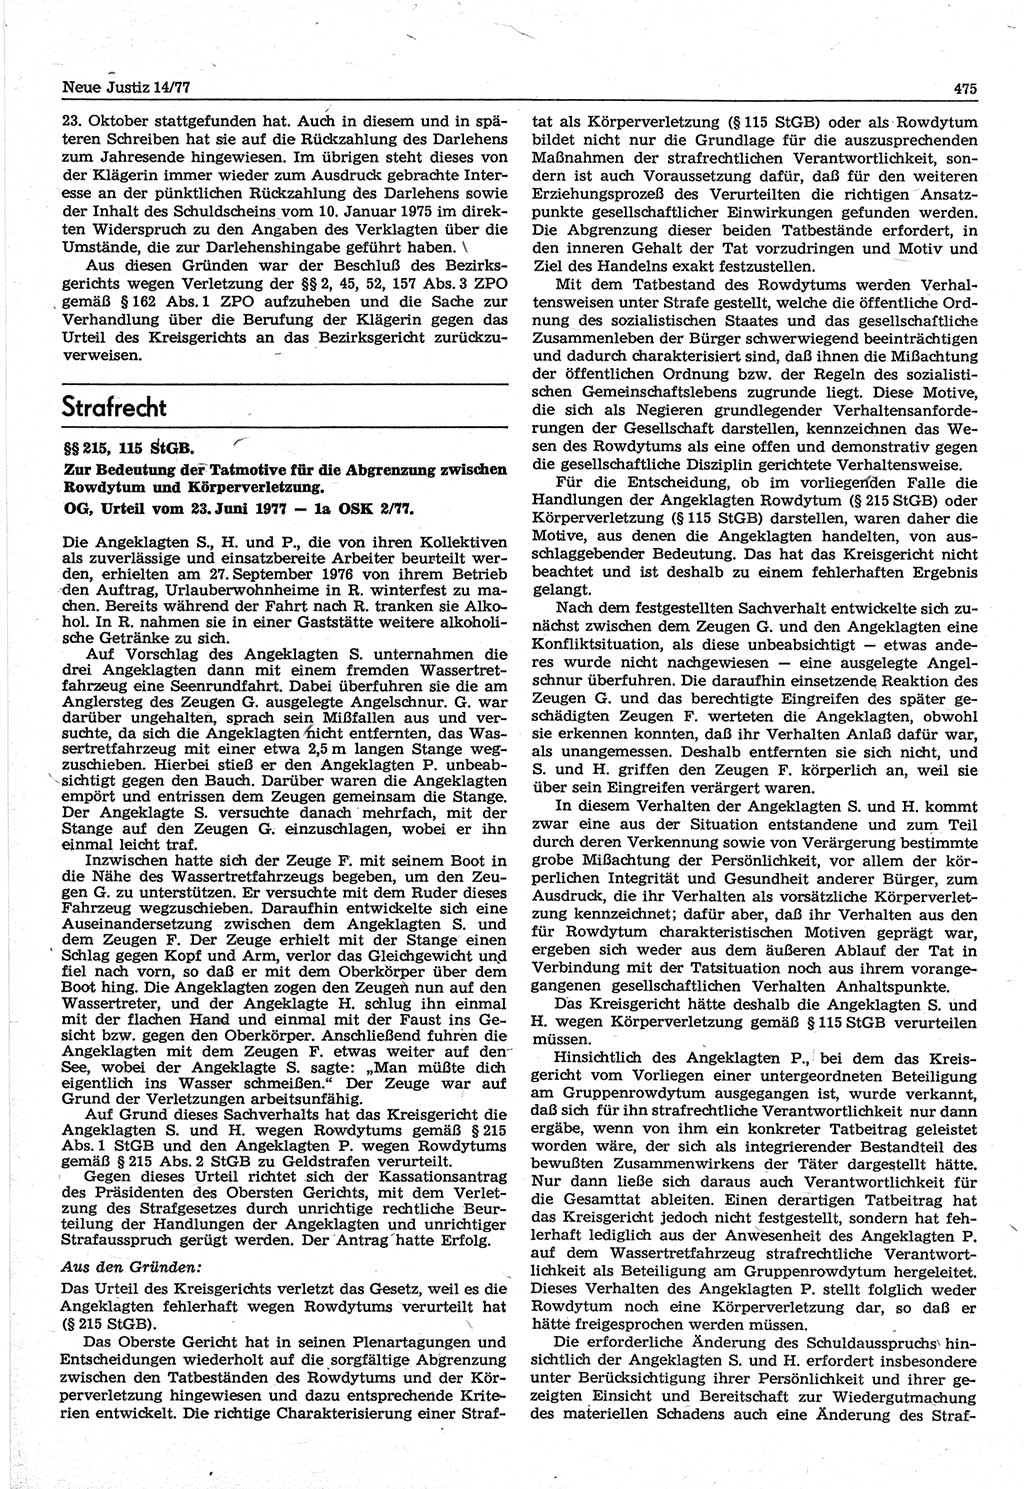 Neue Justiz (NJ), Zeitschrift für Recht und Rechtswissenschaft-Zeitschrift, sozialistisches Recht und Gesetzlichkeit, 31. Jahrgang 1977, Seite 475 (NJ DDR 1977, S. 475)